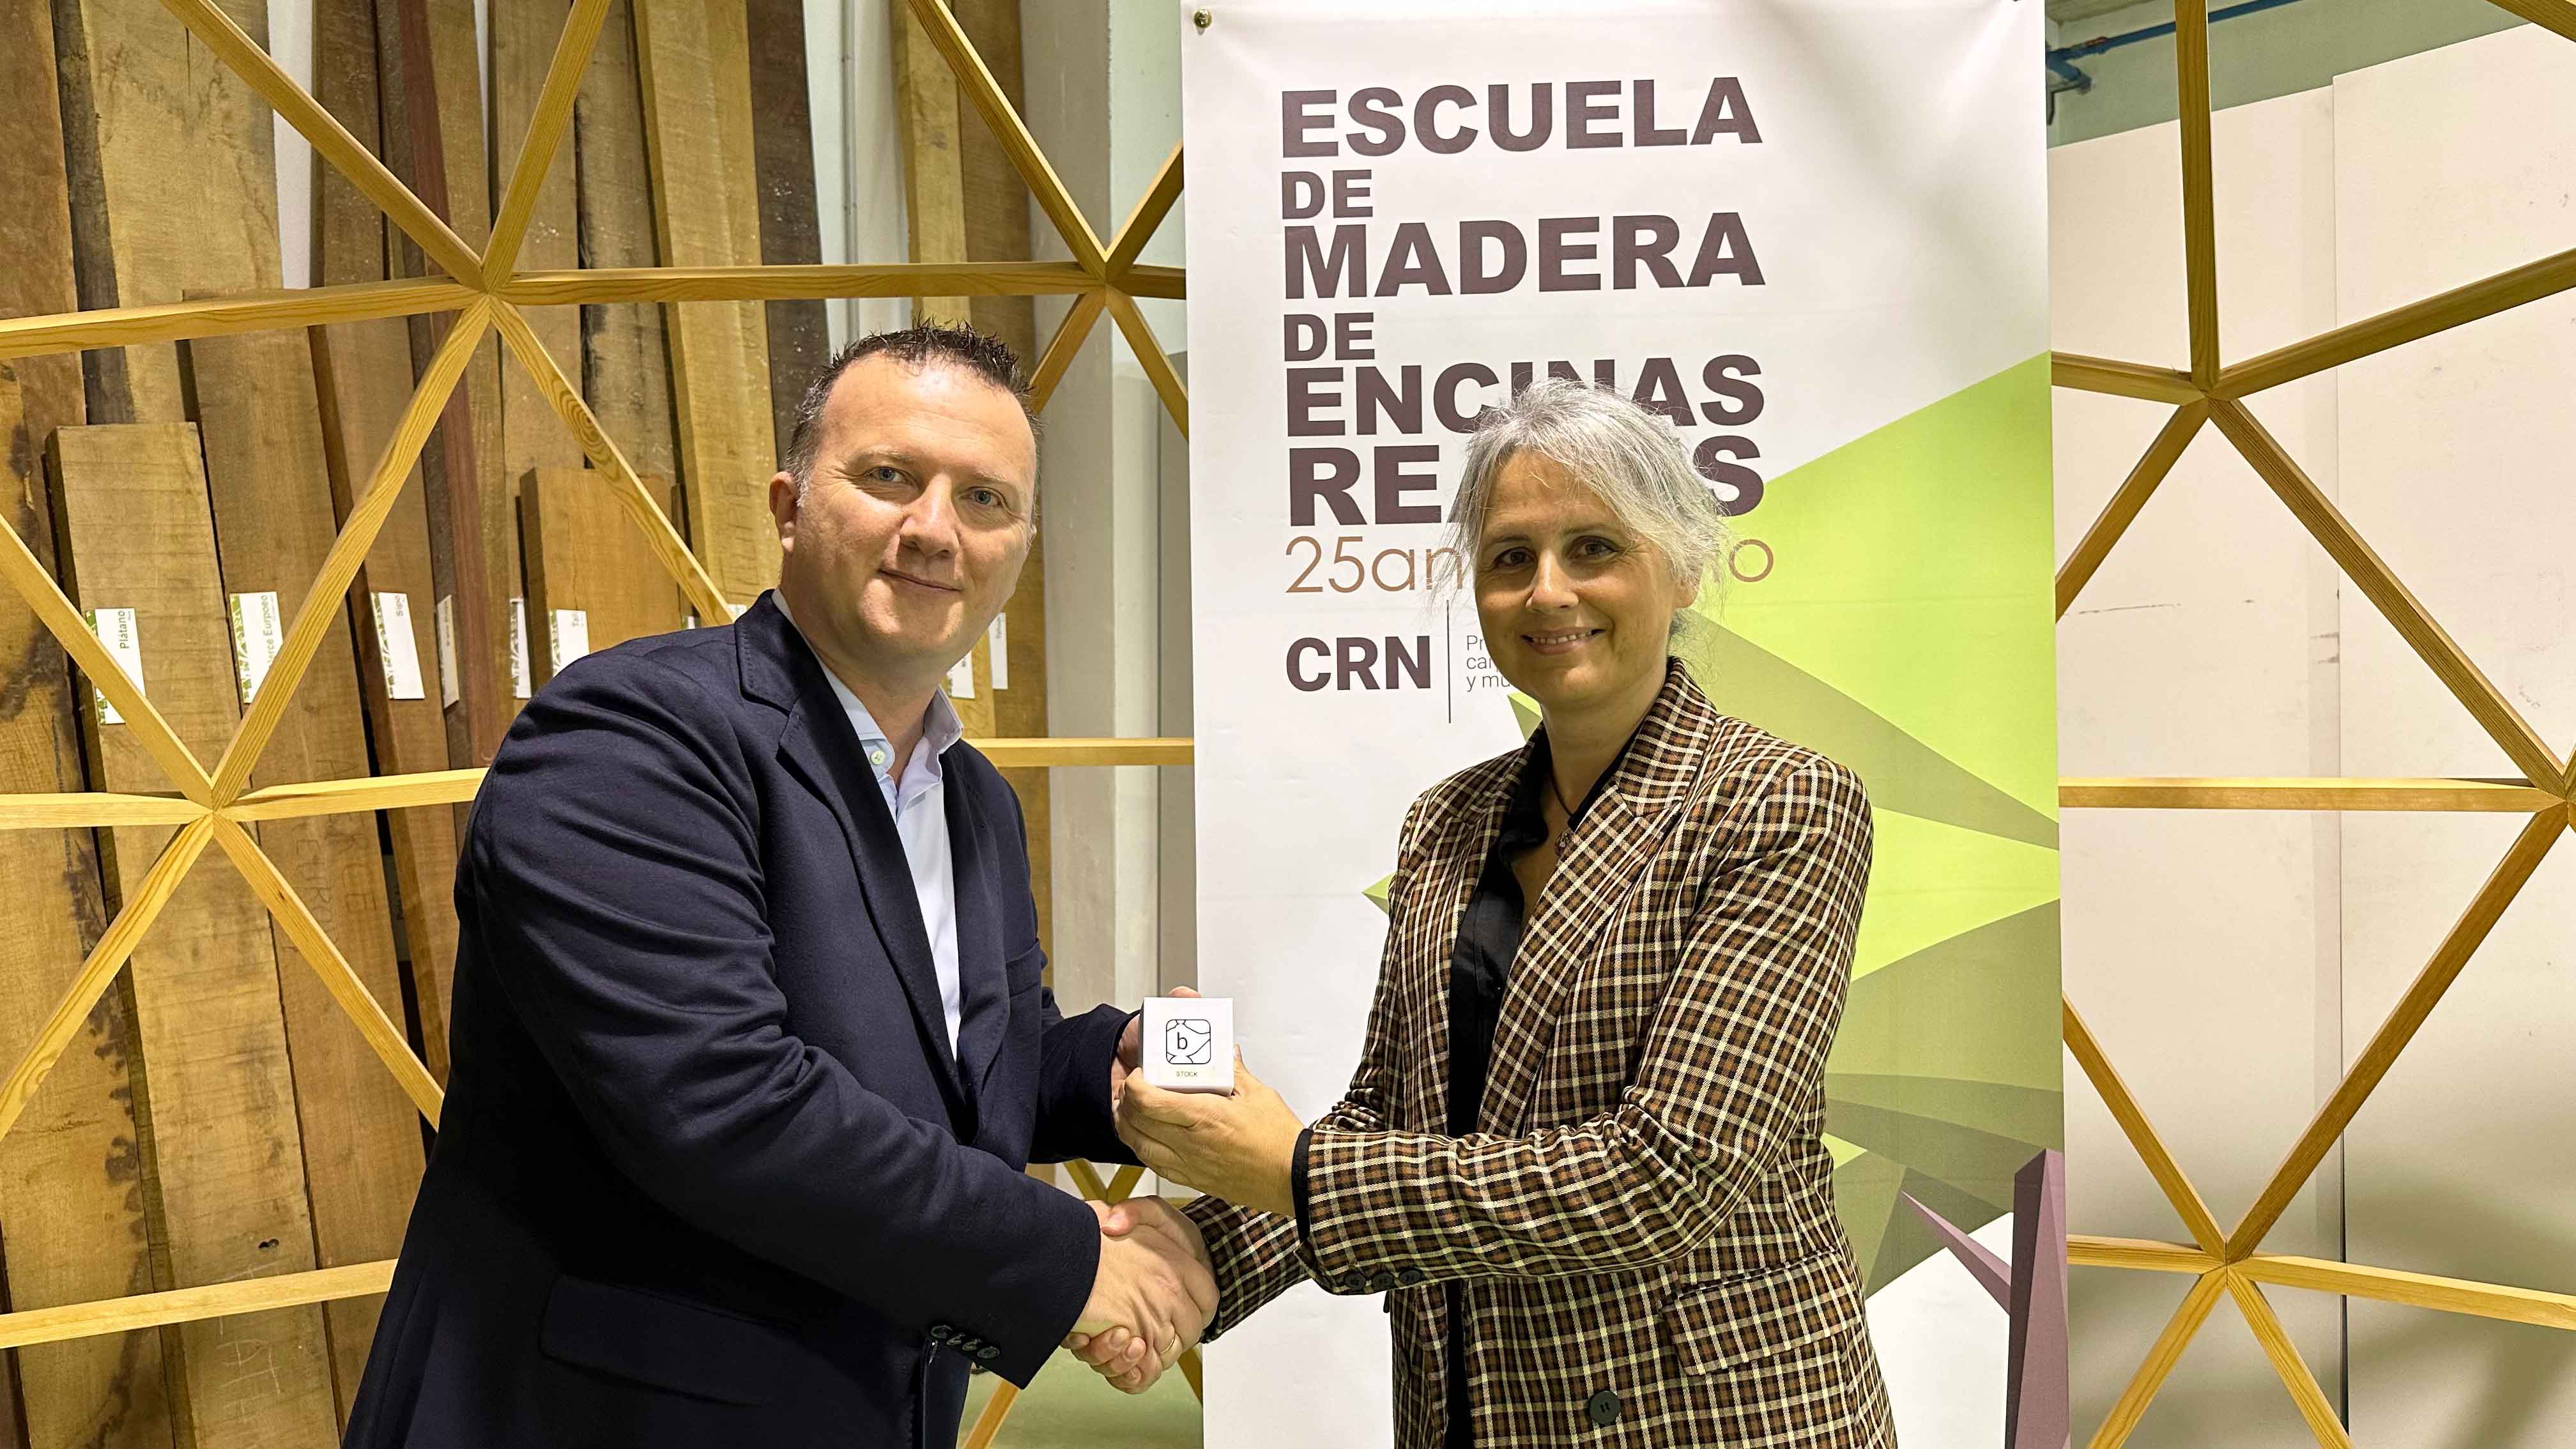 Biesse Ibérica profundiza sus relaciones con el Escuela de Madera de Encinas Reales - CRN Producción, Carpintería y Mueble.